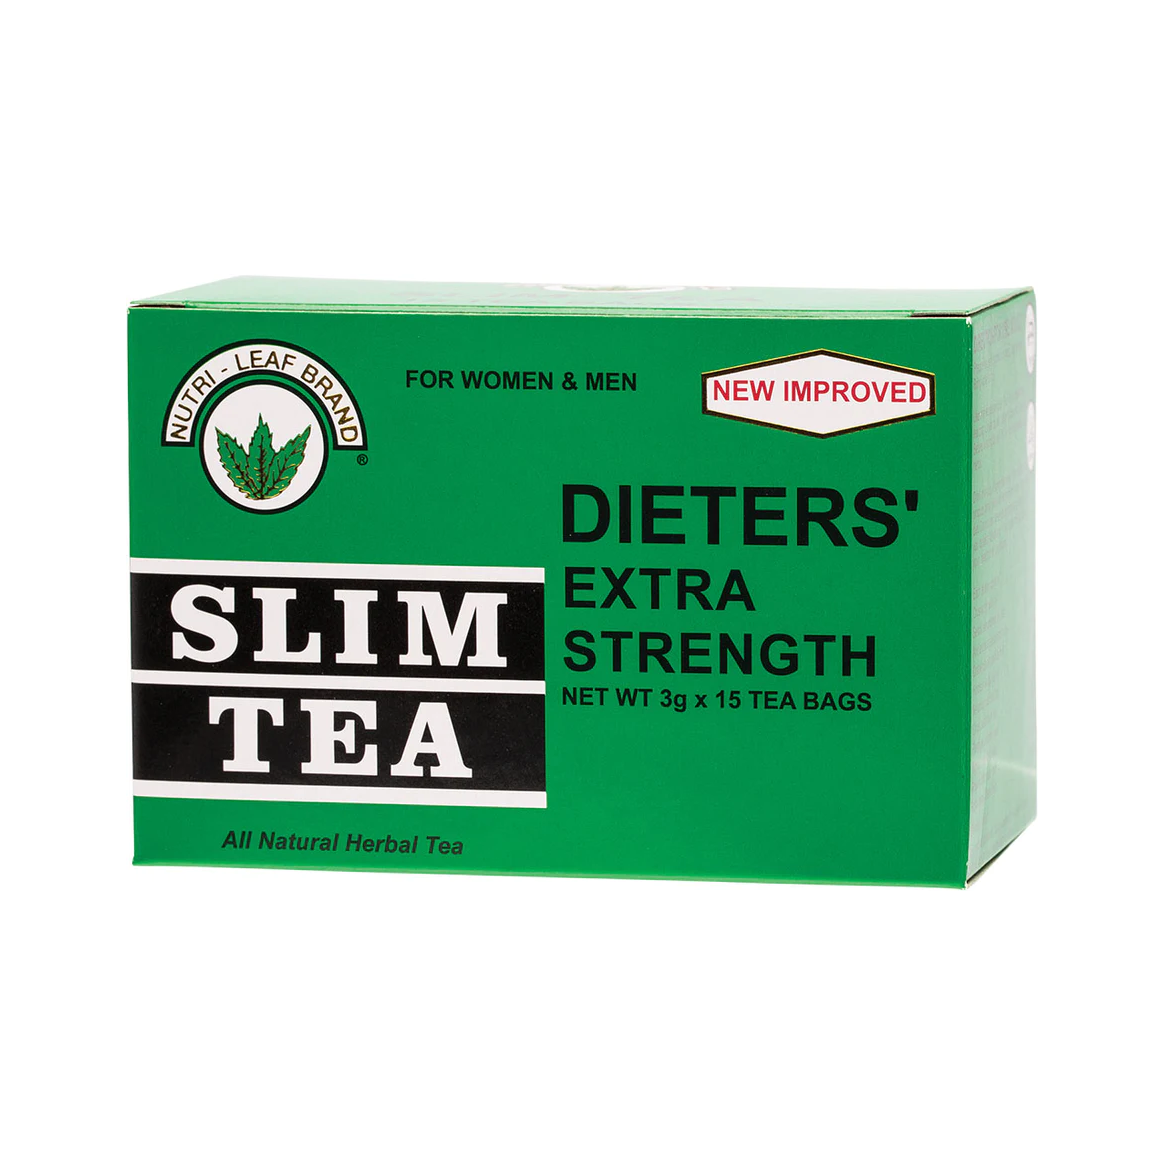 Nutri-Leaf Dieters Slim Tea 15 Tea Bags, Extra Strength